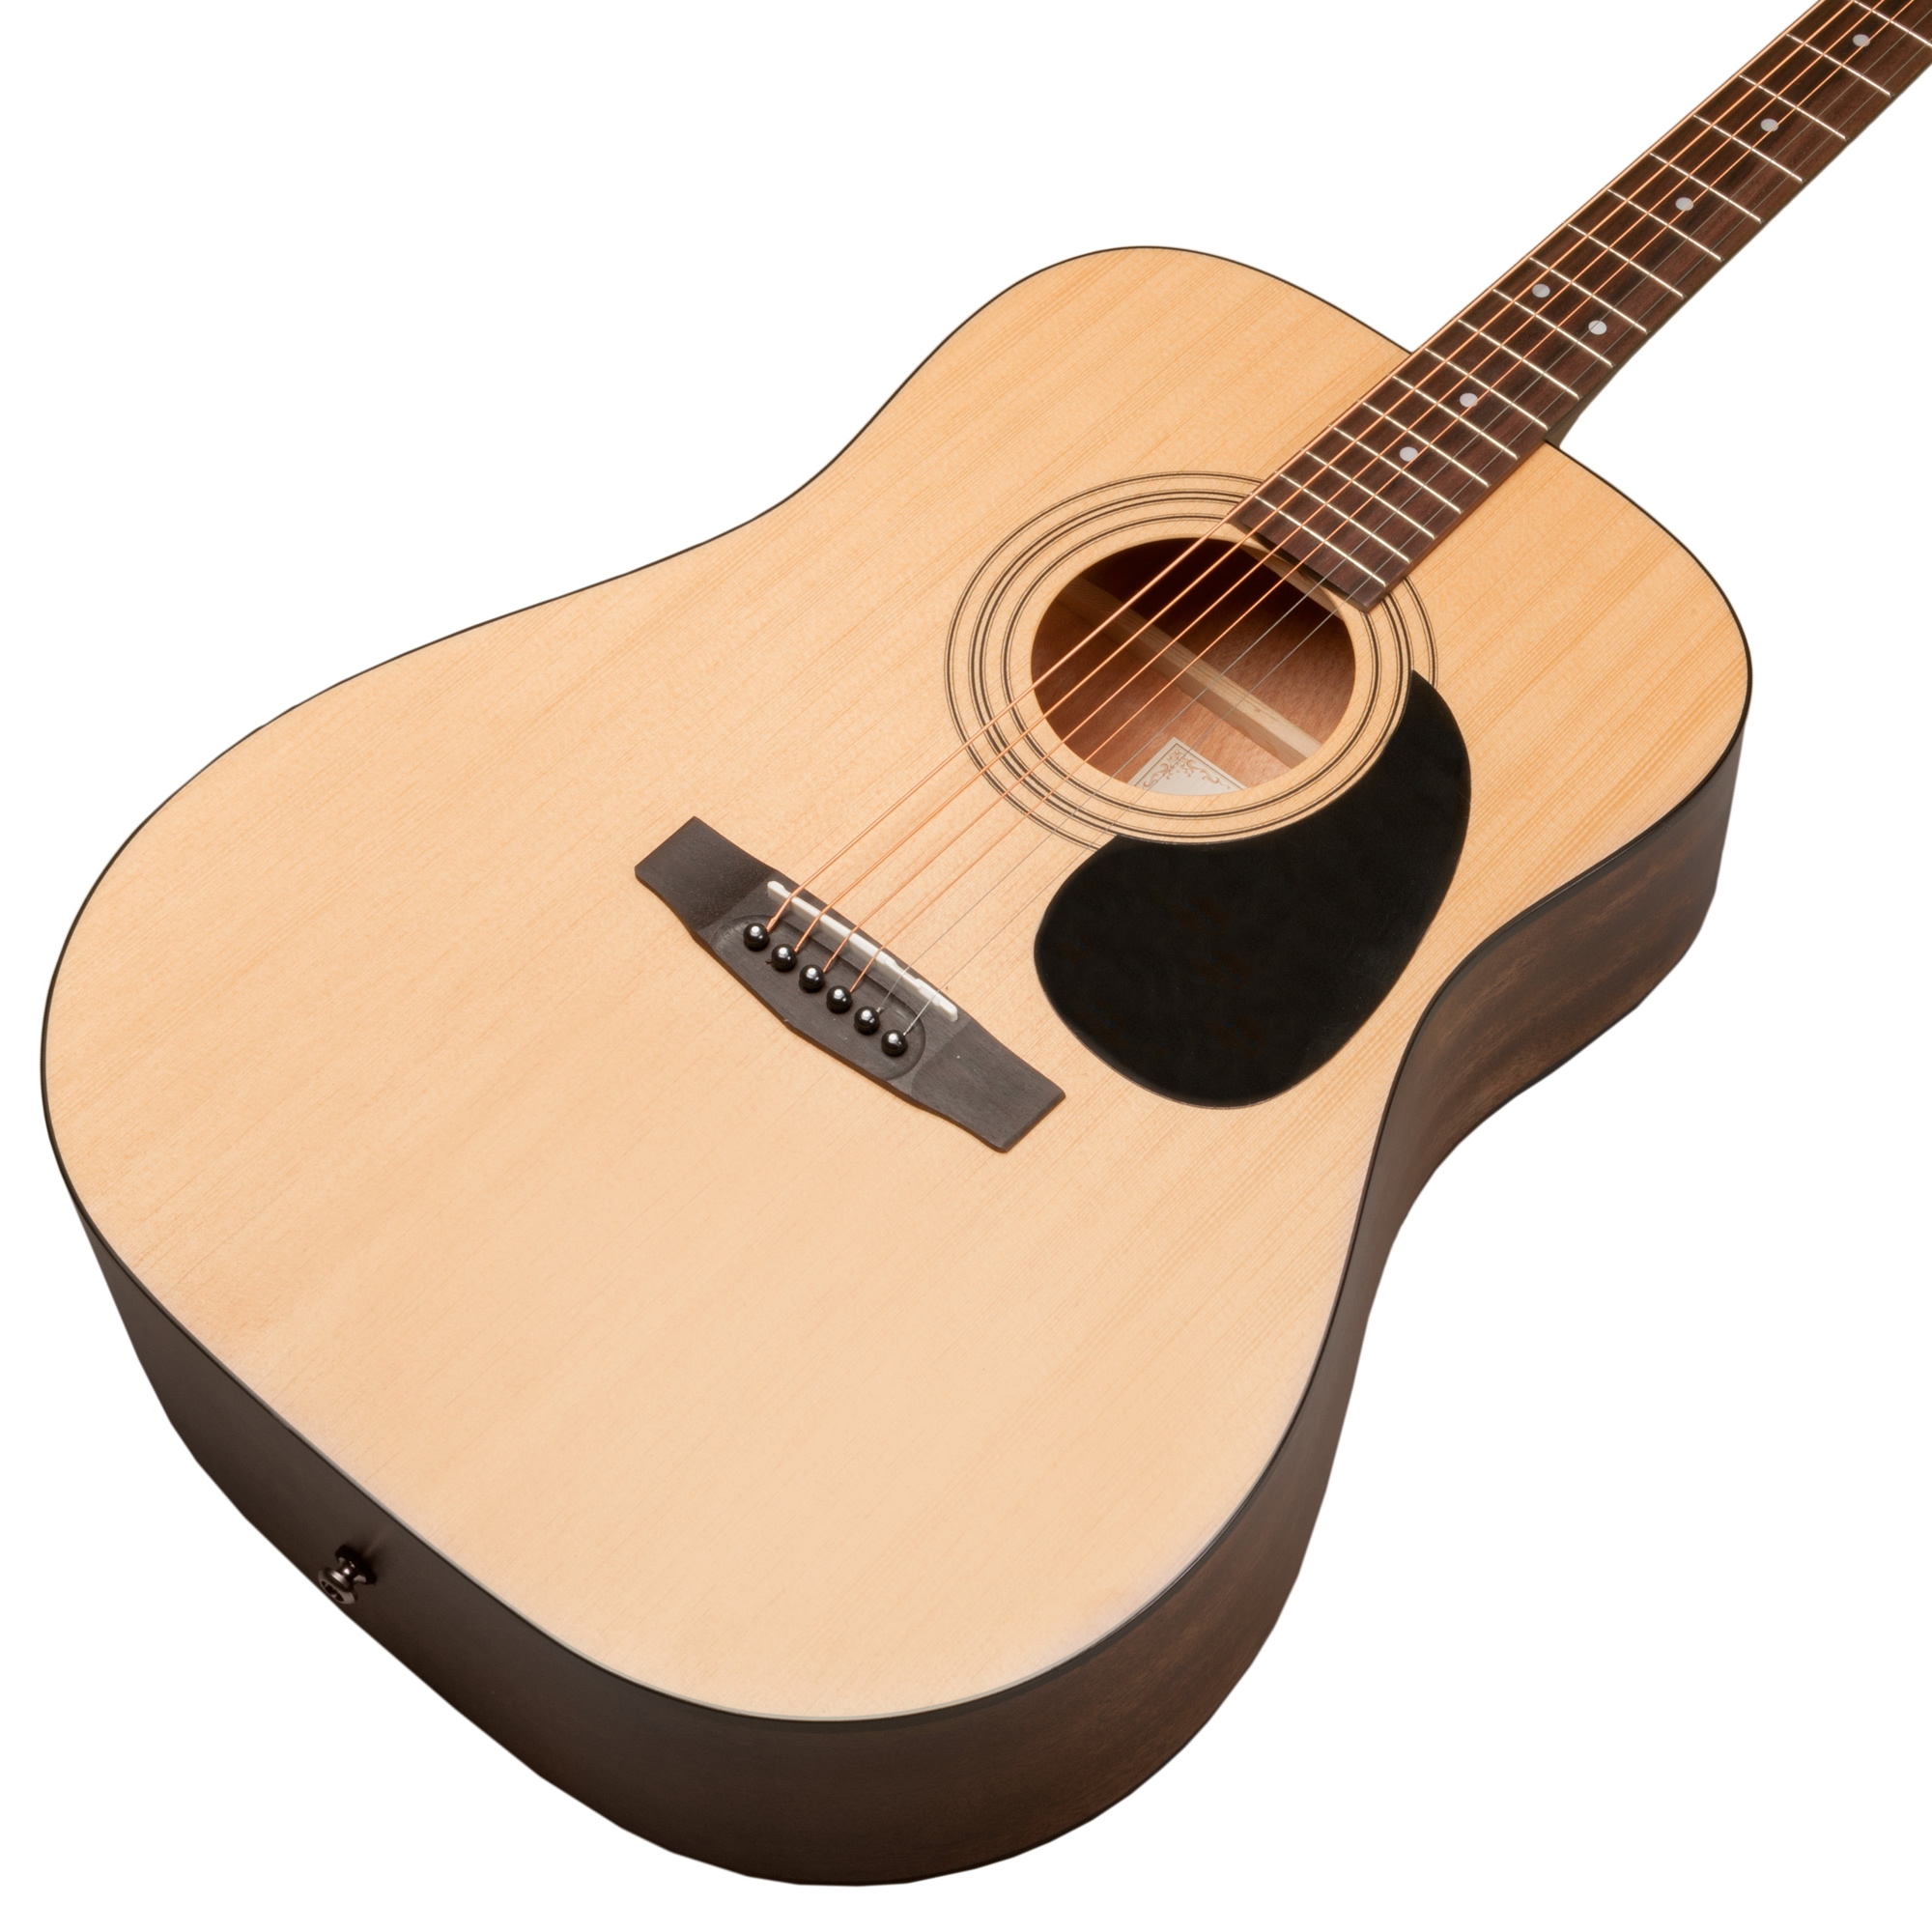 Limited Series アコースティックギター Y1